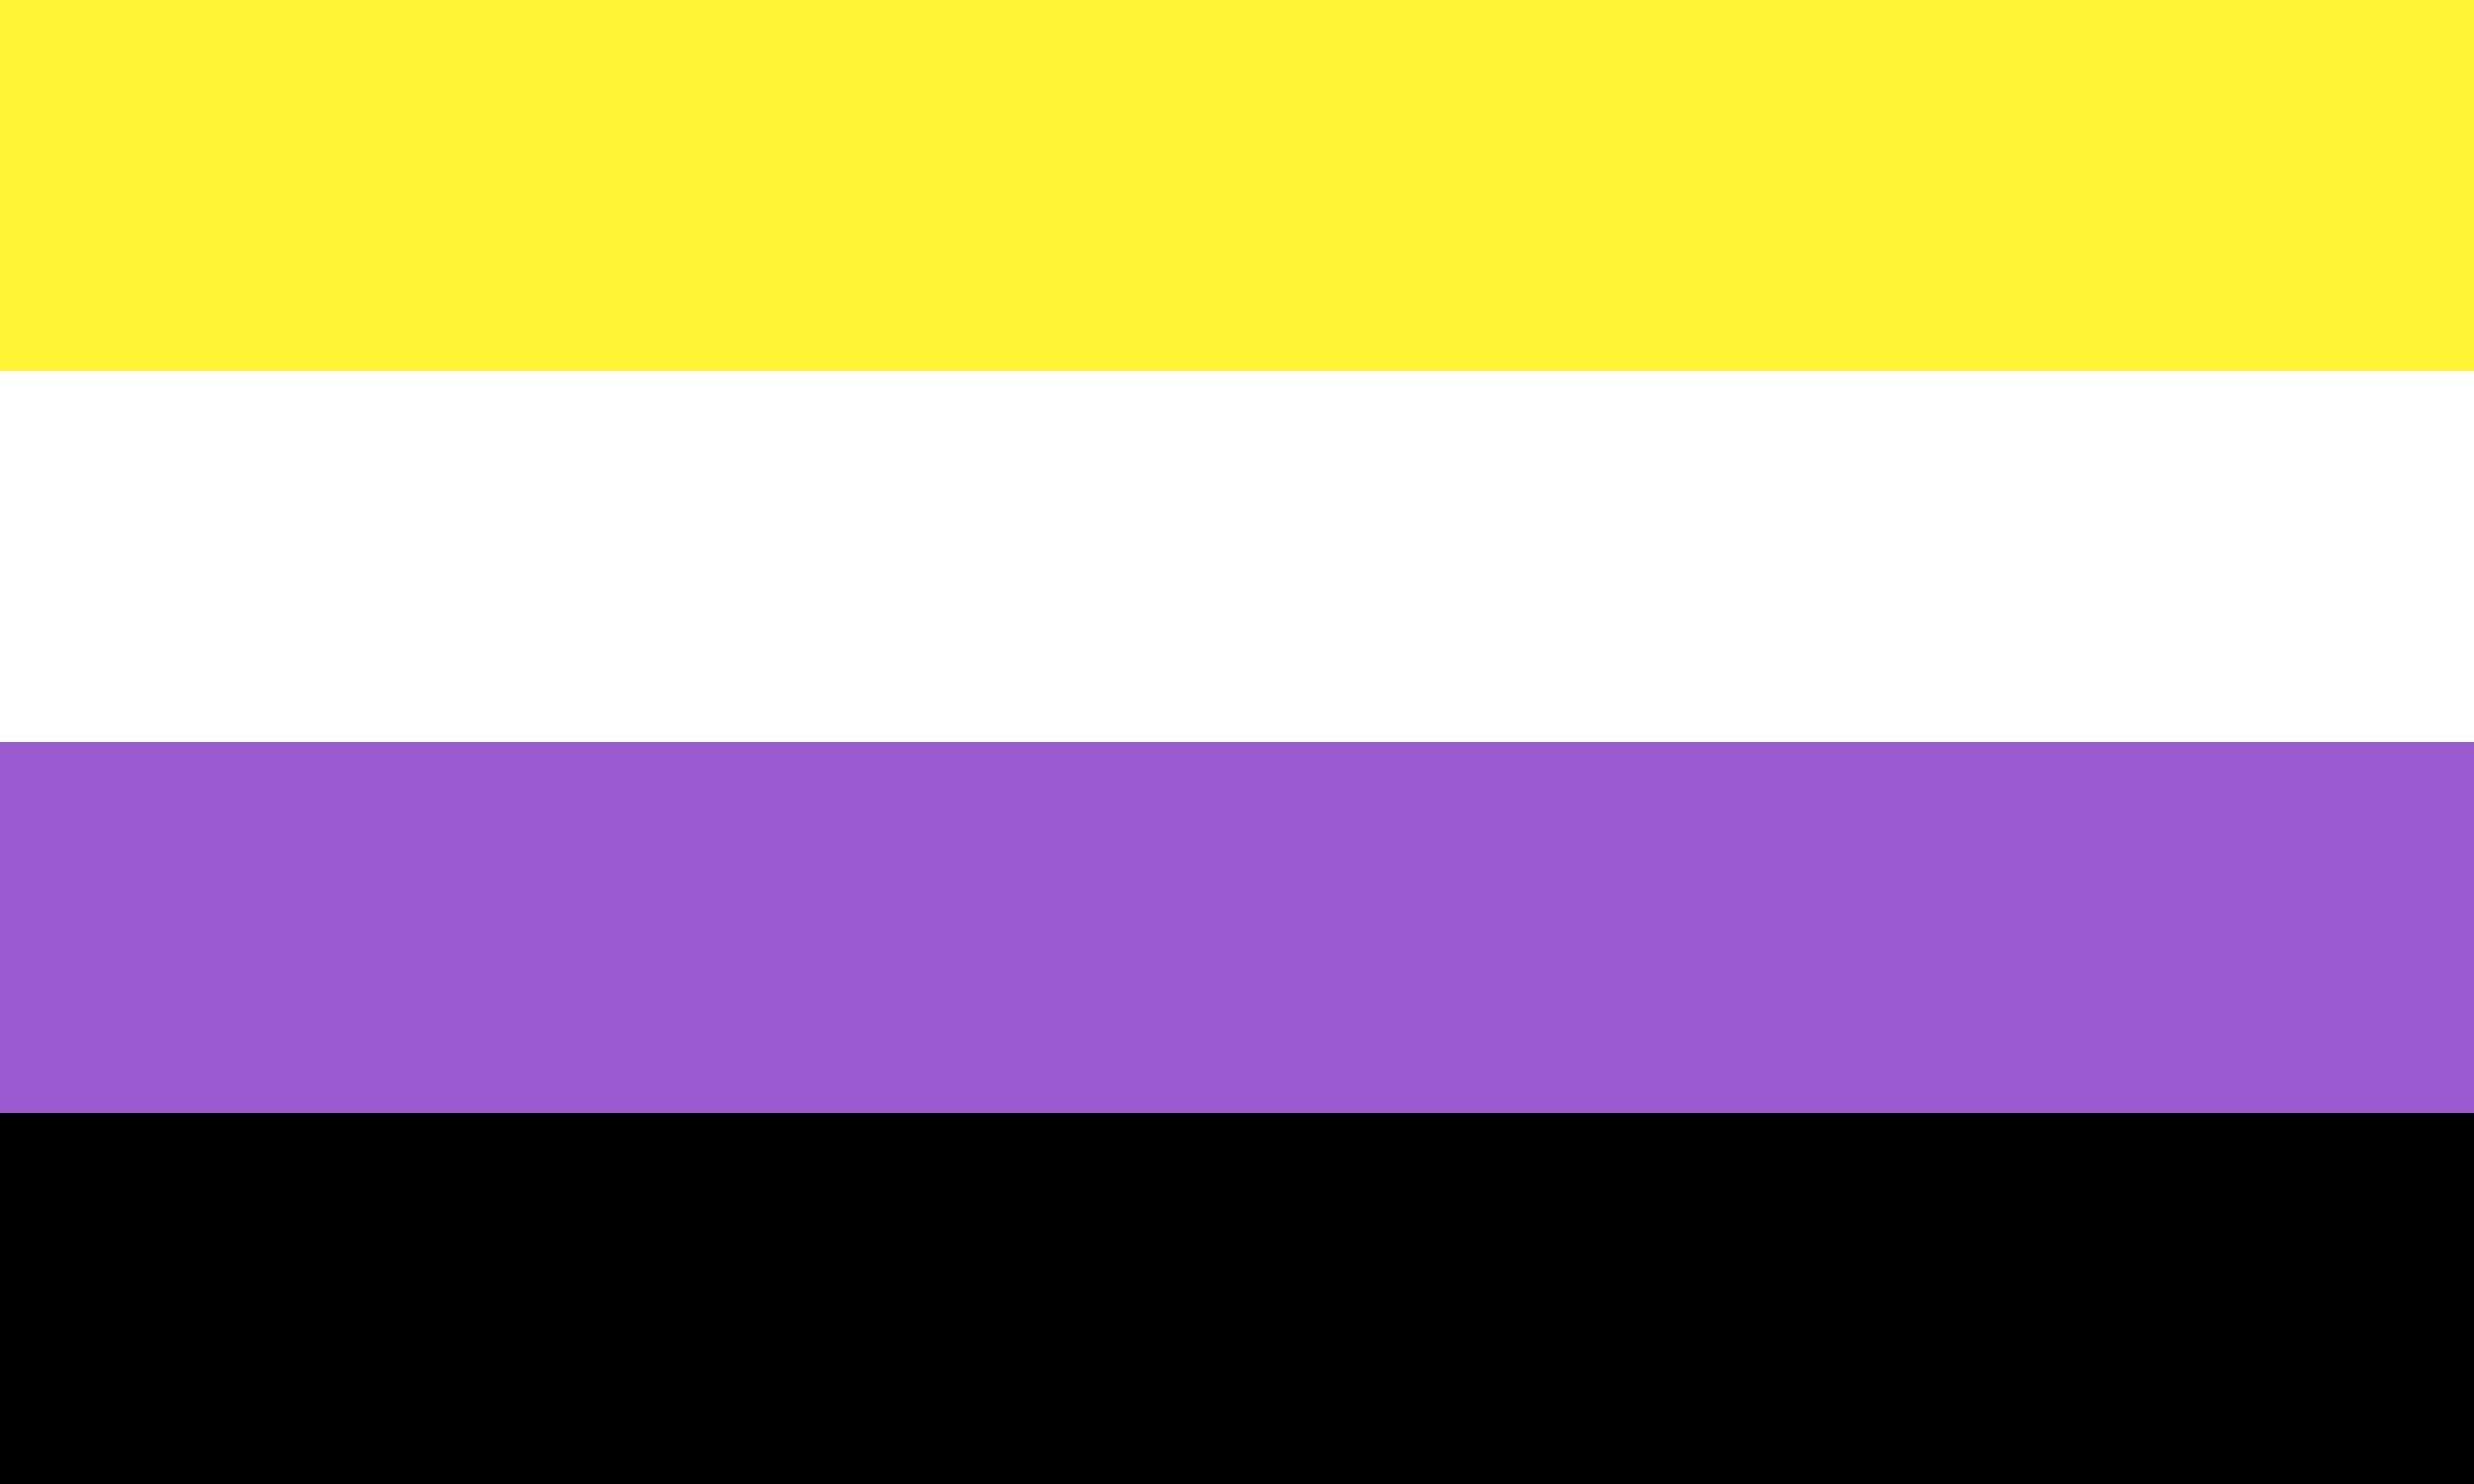 O quanto você sabe sobre as bandeiras LGBT?